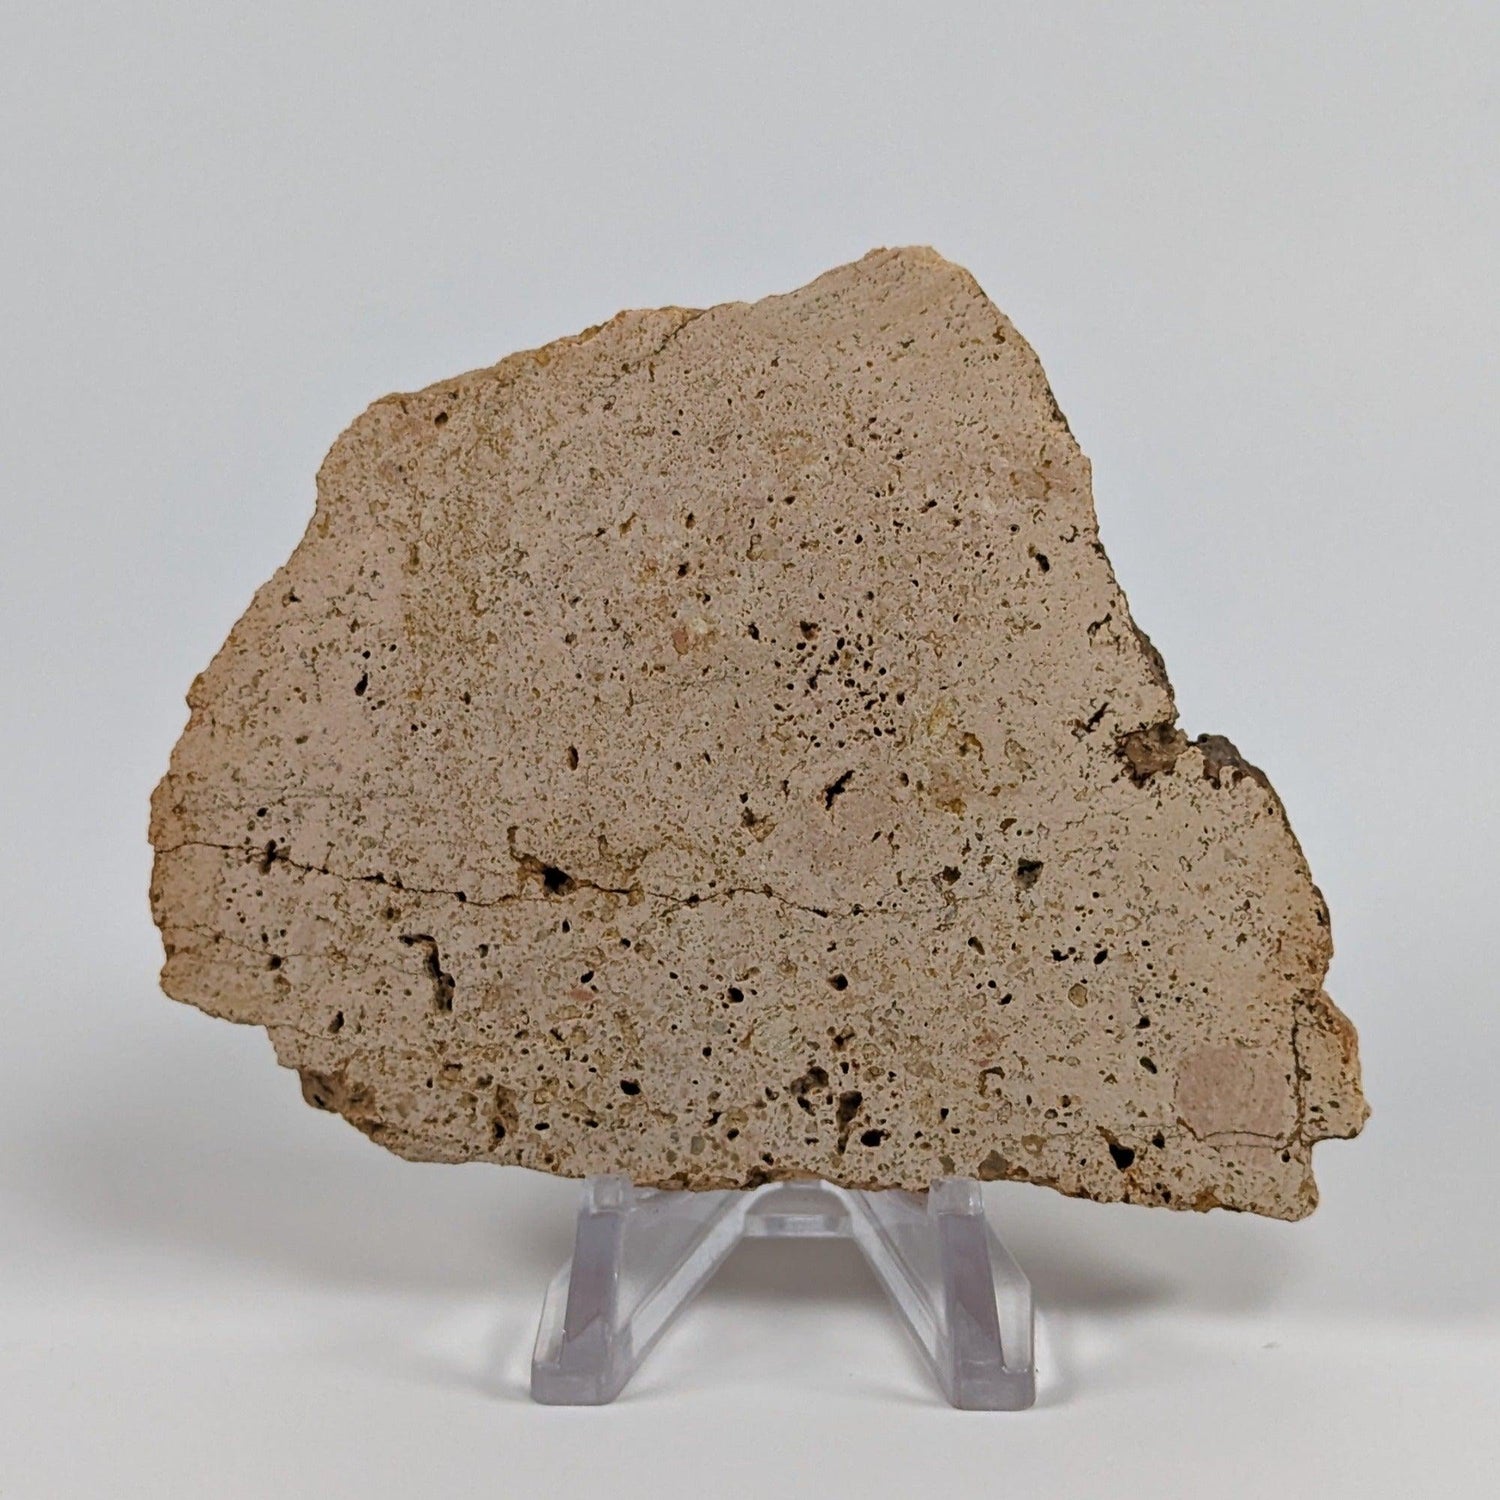 Impactite Vesicular Breccia Suevite | 76.5 Grams | La Valette, Rochechouart Structure, France